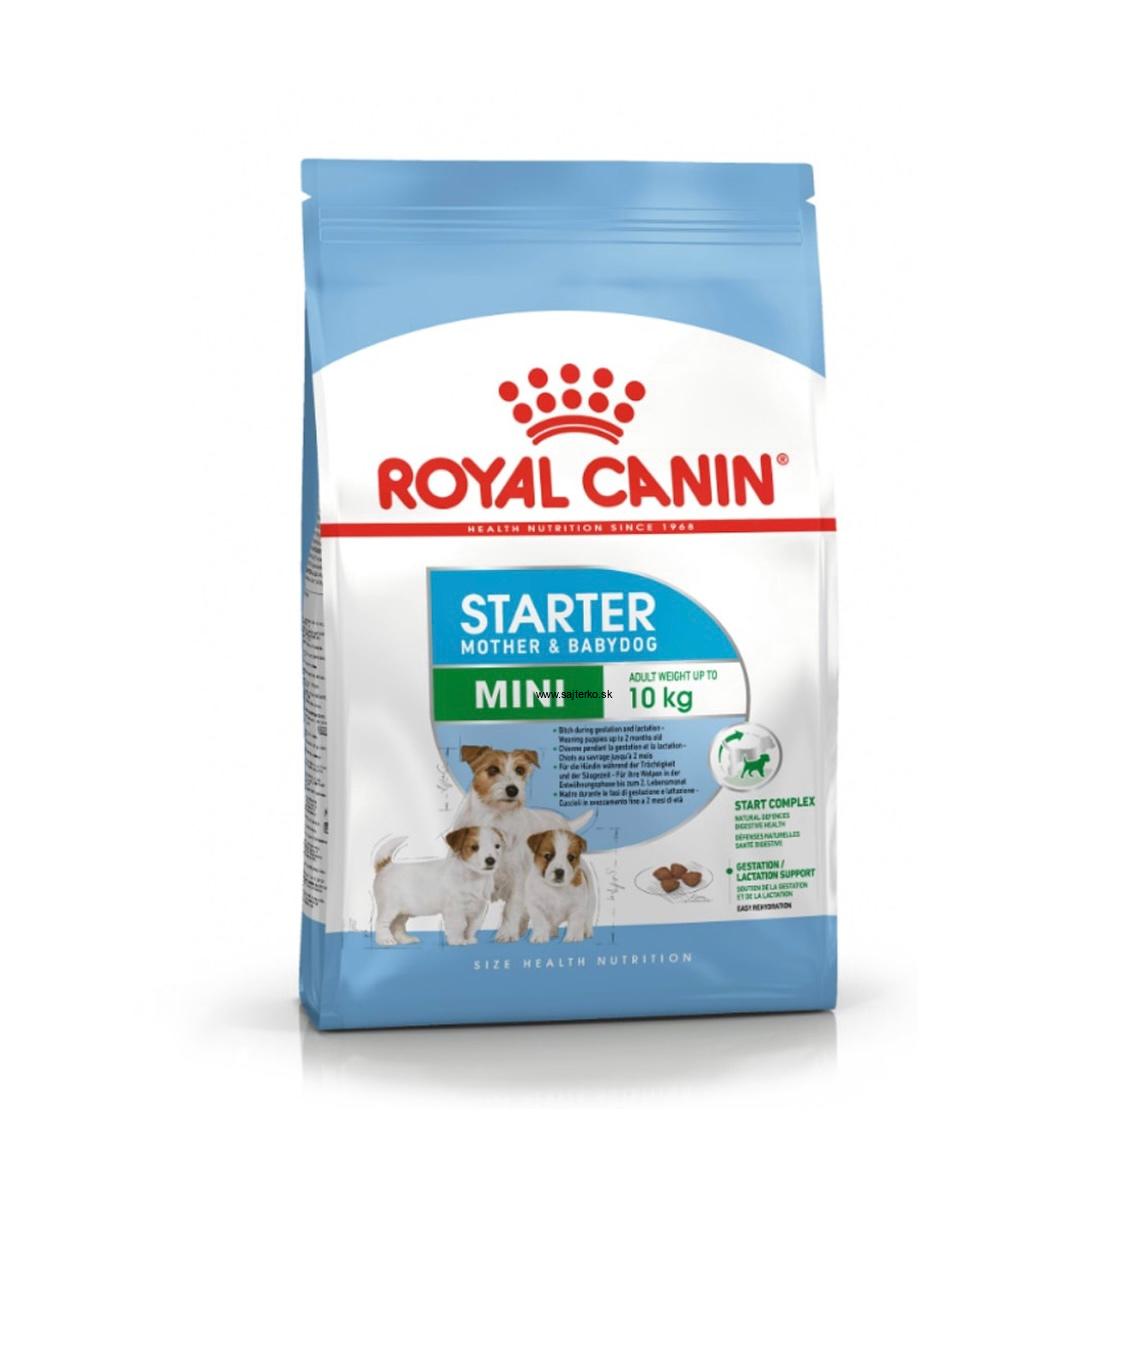 Royal Canin Mini Starter Mother&Babydog 1kg 